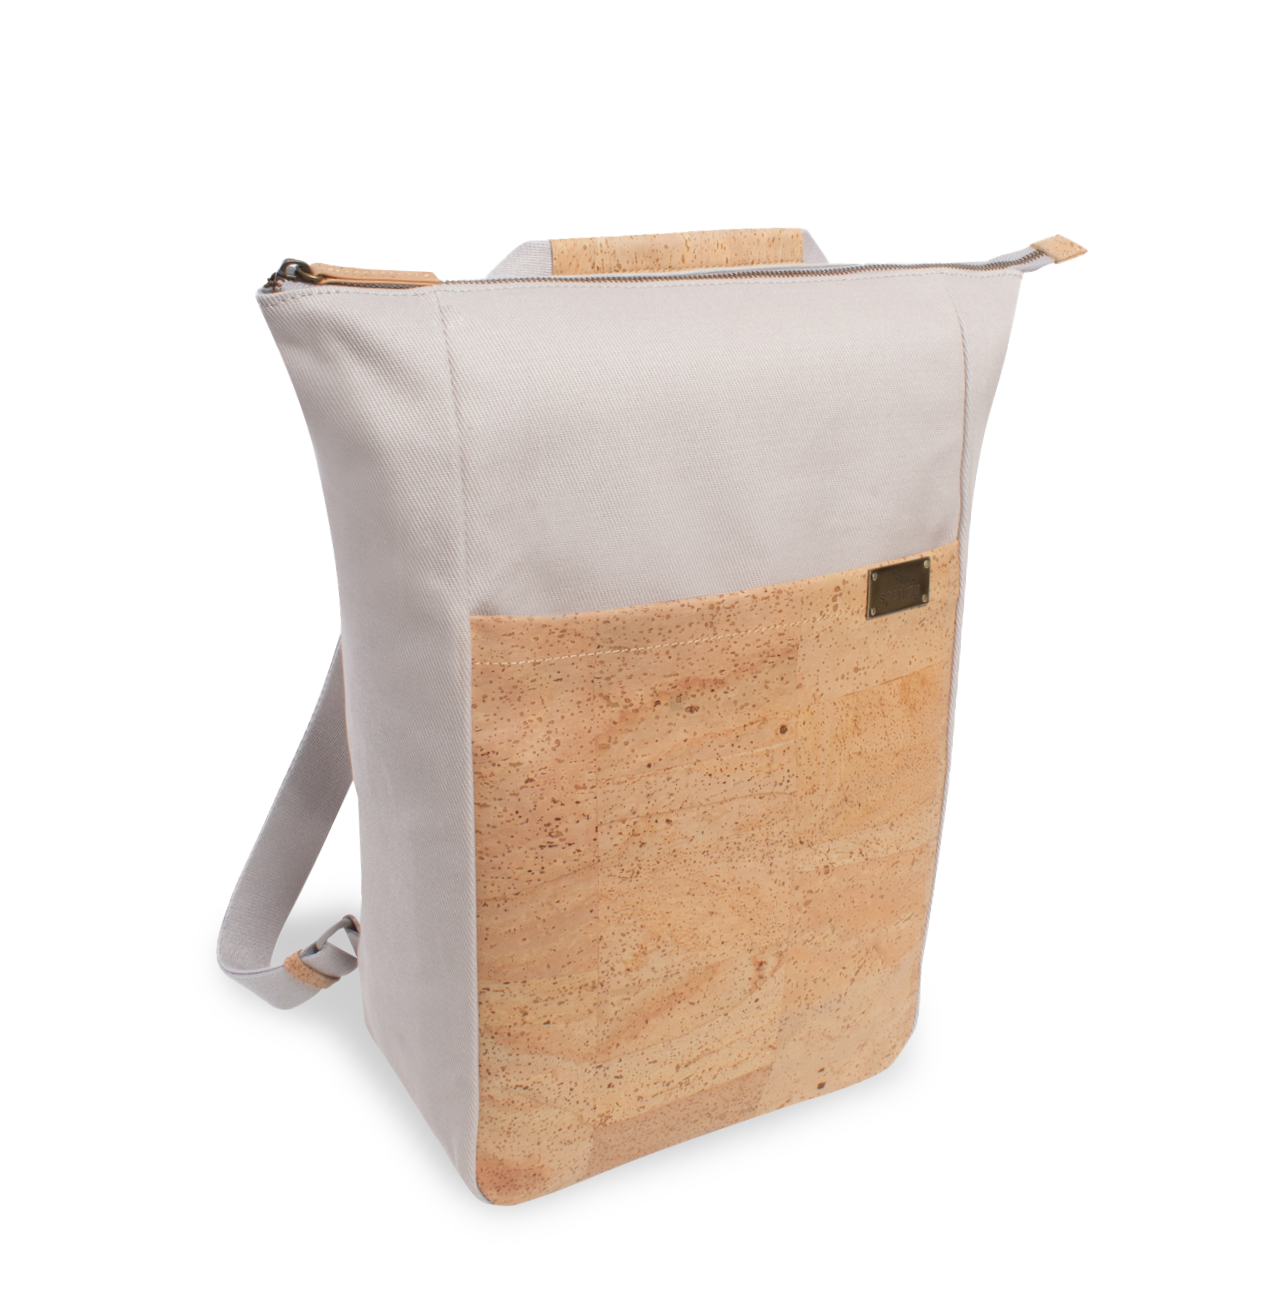 Nachhaltiger 2-in-1 Rucksack aus Kork in grau #Farbe_Tern Cream